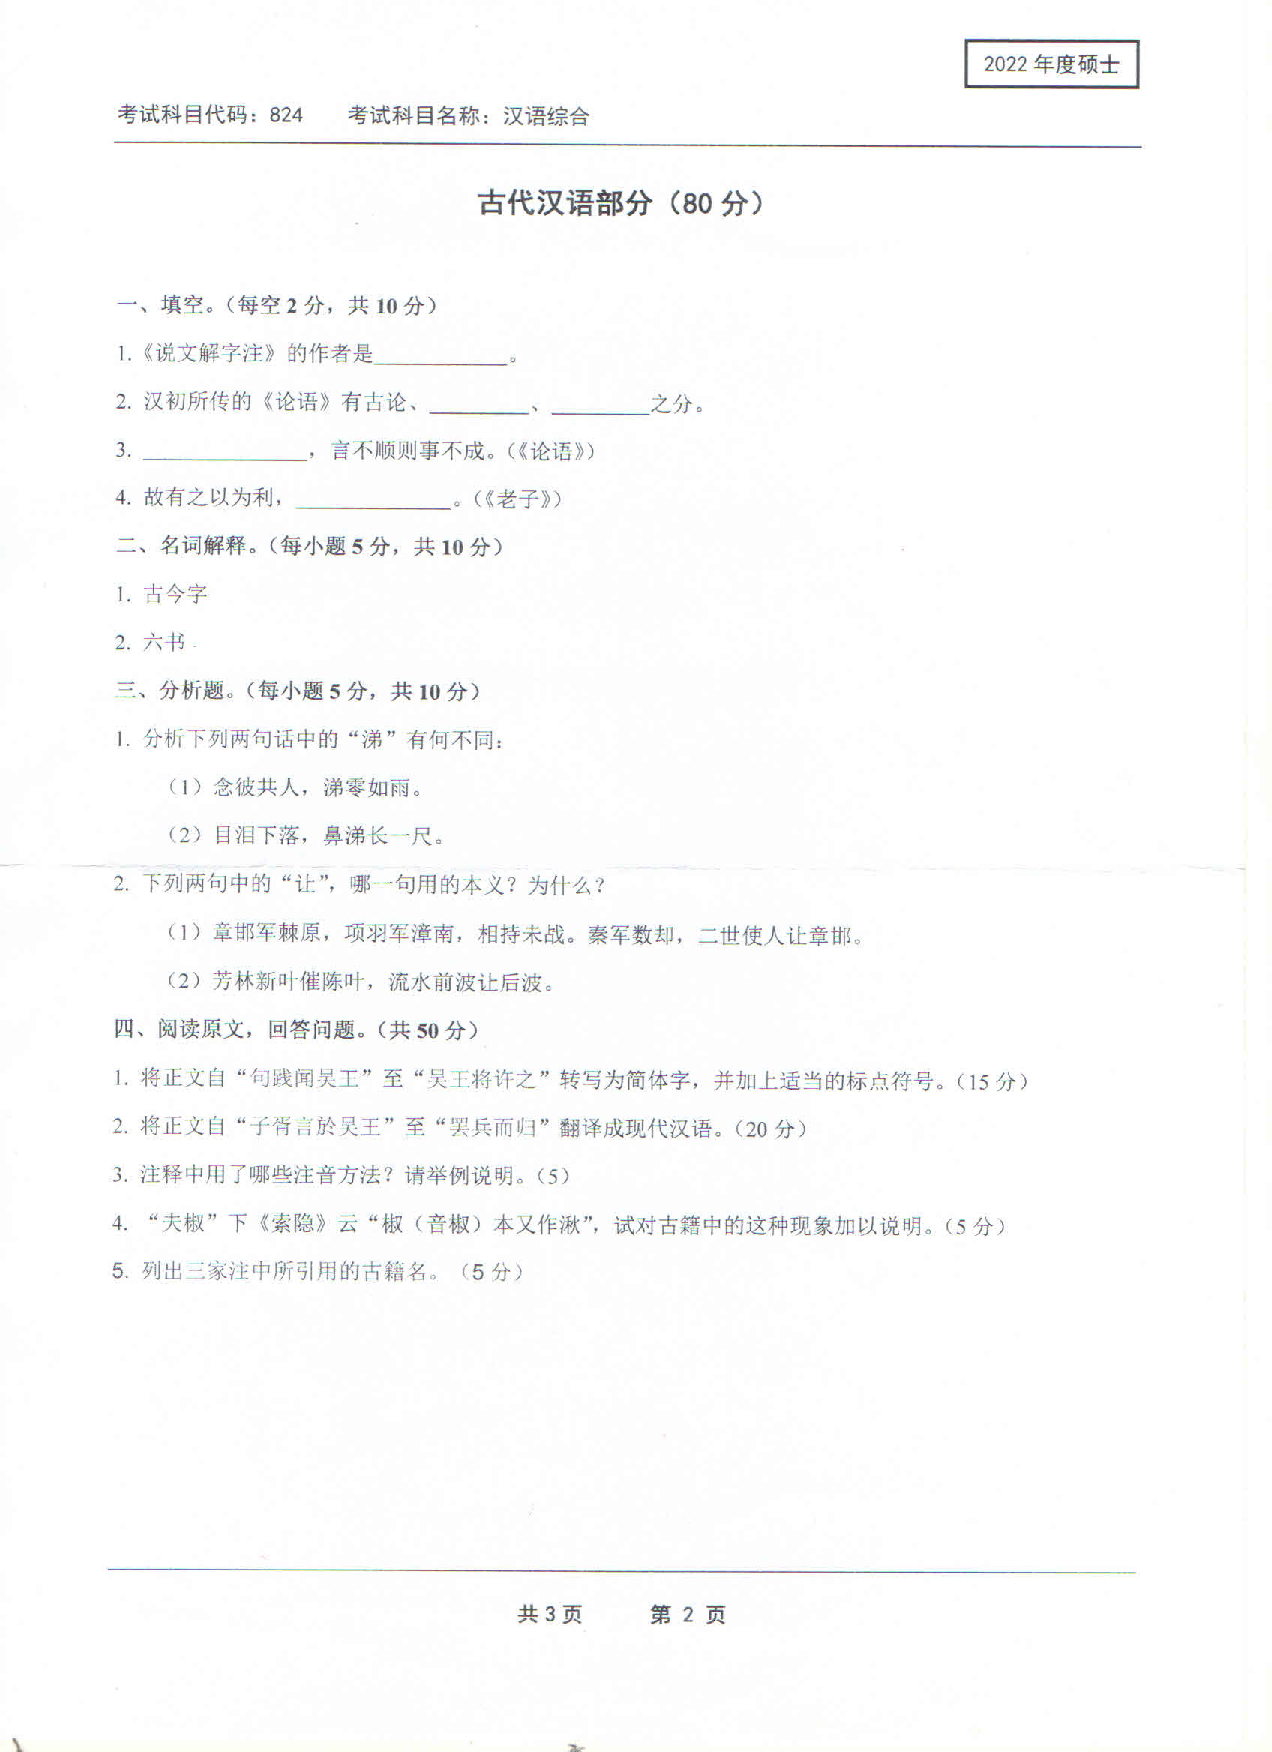 2022考研真题：西南科技大学2022年考研科目 824 汉语综合 考试真题第2页